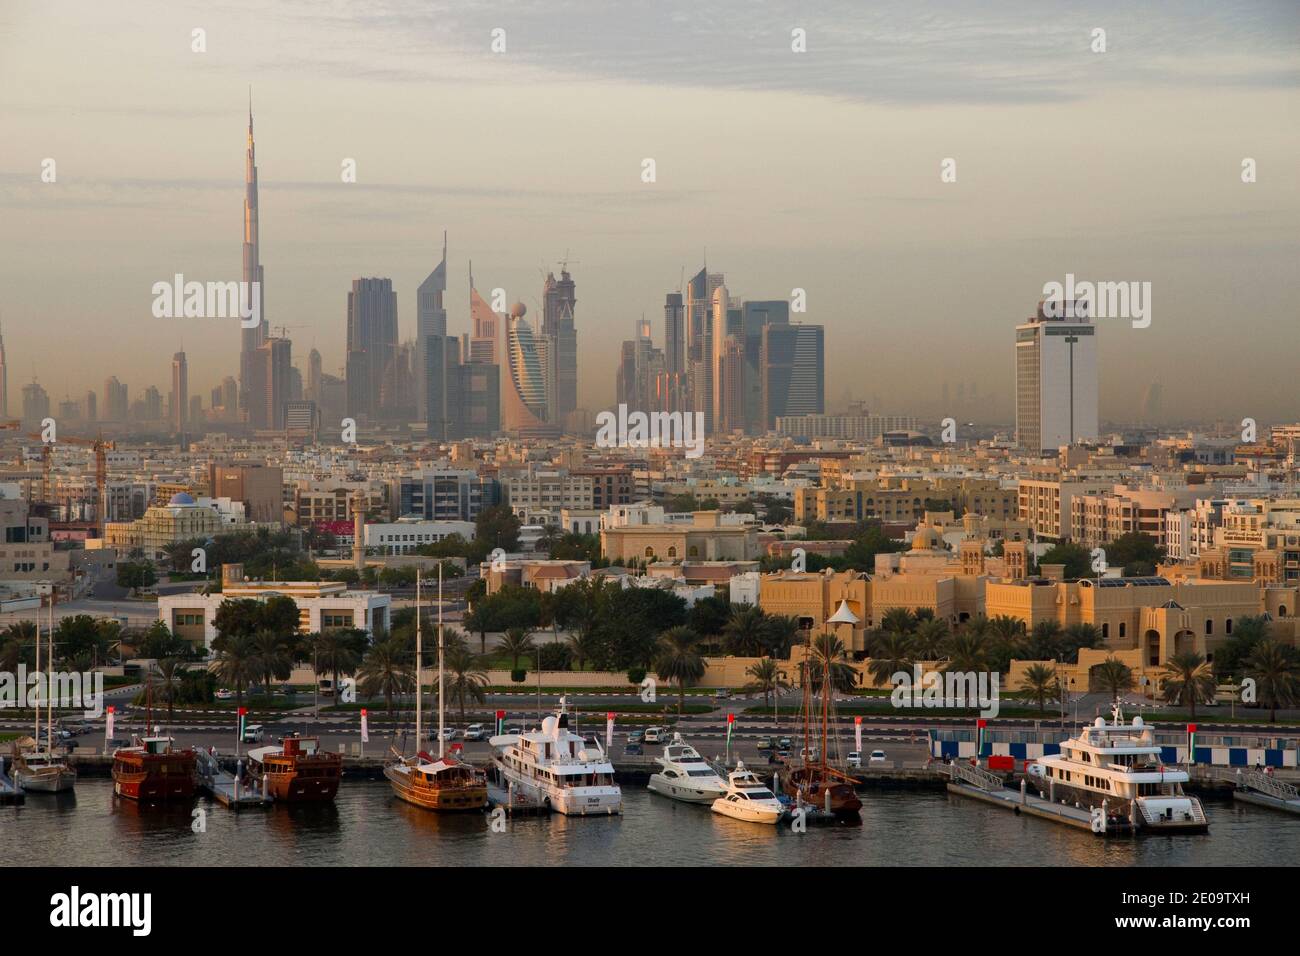 DUBAI CITY, THE HARBOUR, UNITED ARAB EMIRATES.VUE DE DUBAI, LE PORT, EMIRATS ARABES UNIS. PHOTO BY FREDERIC REGLAIN/ABACAPRESS.COM Stock Photo